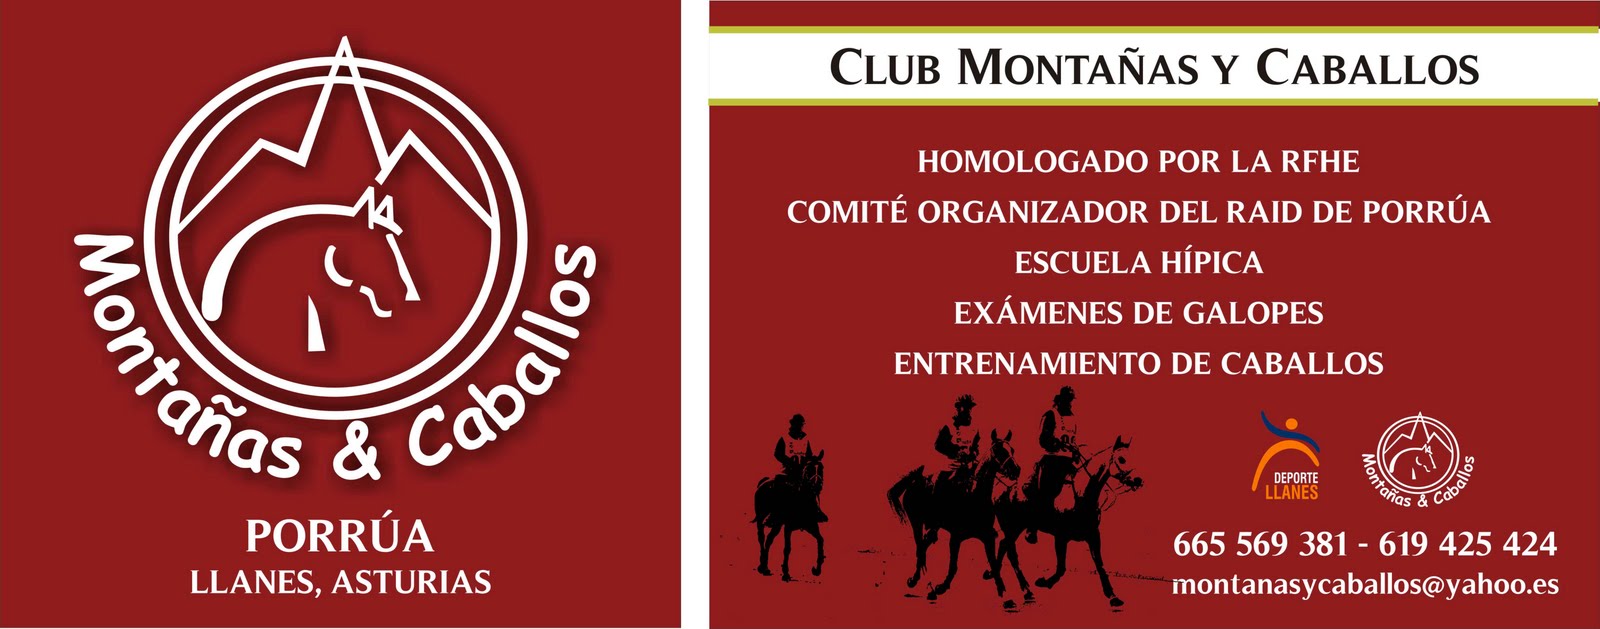 CLUB MONTAÑAS Y CABALLOS